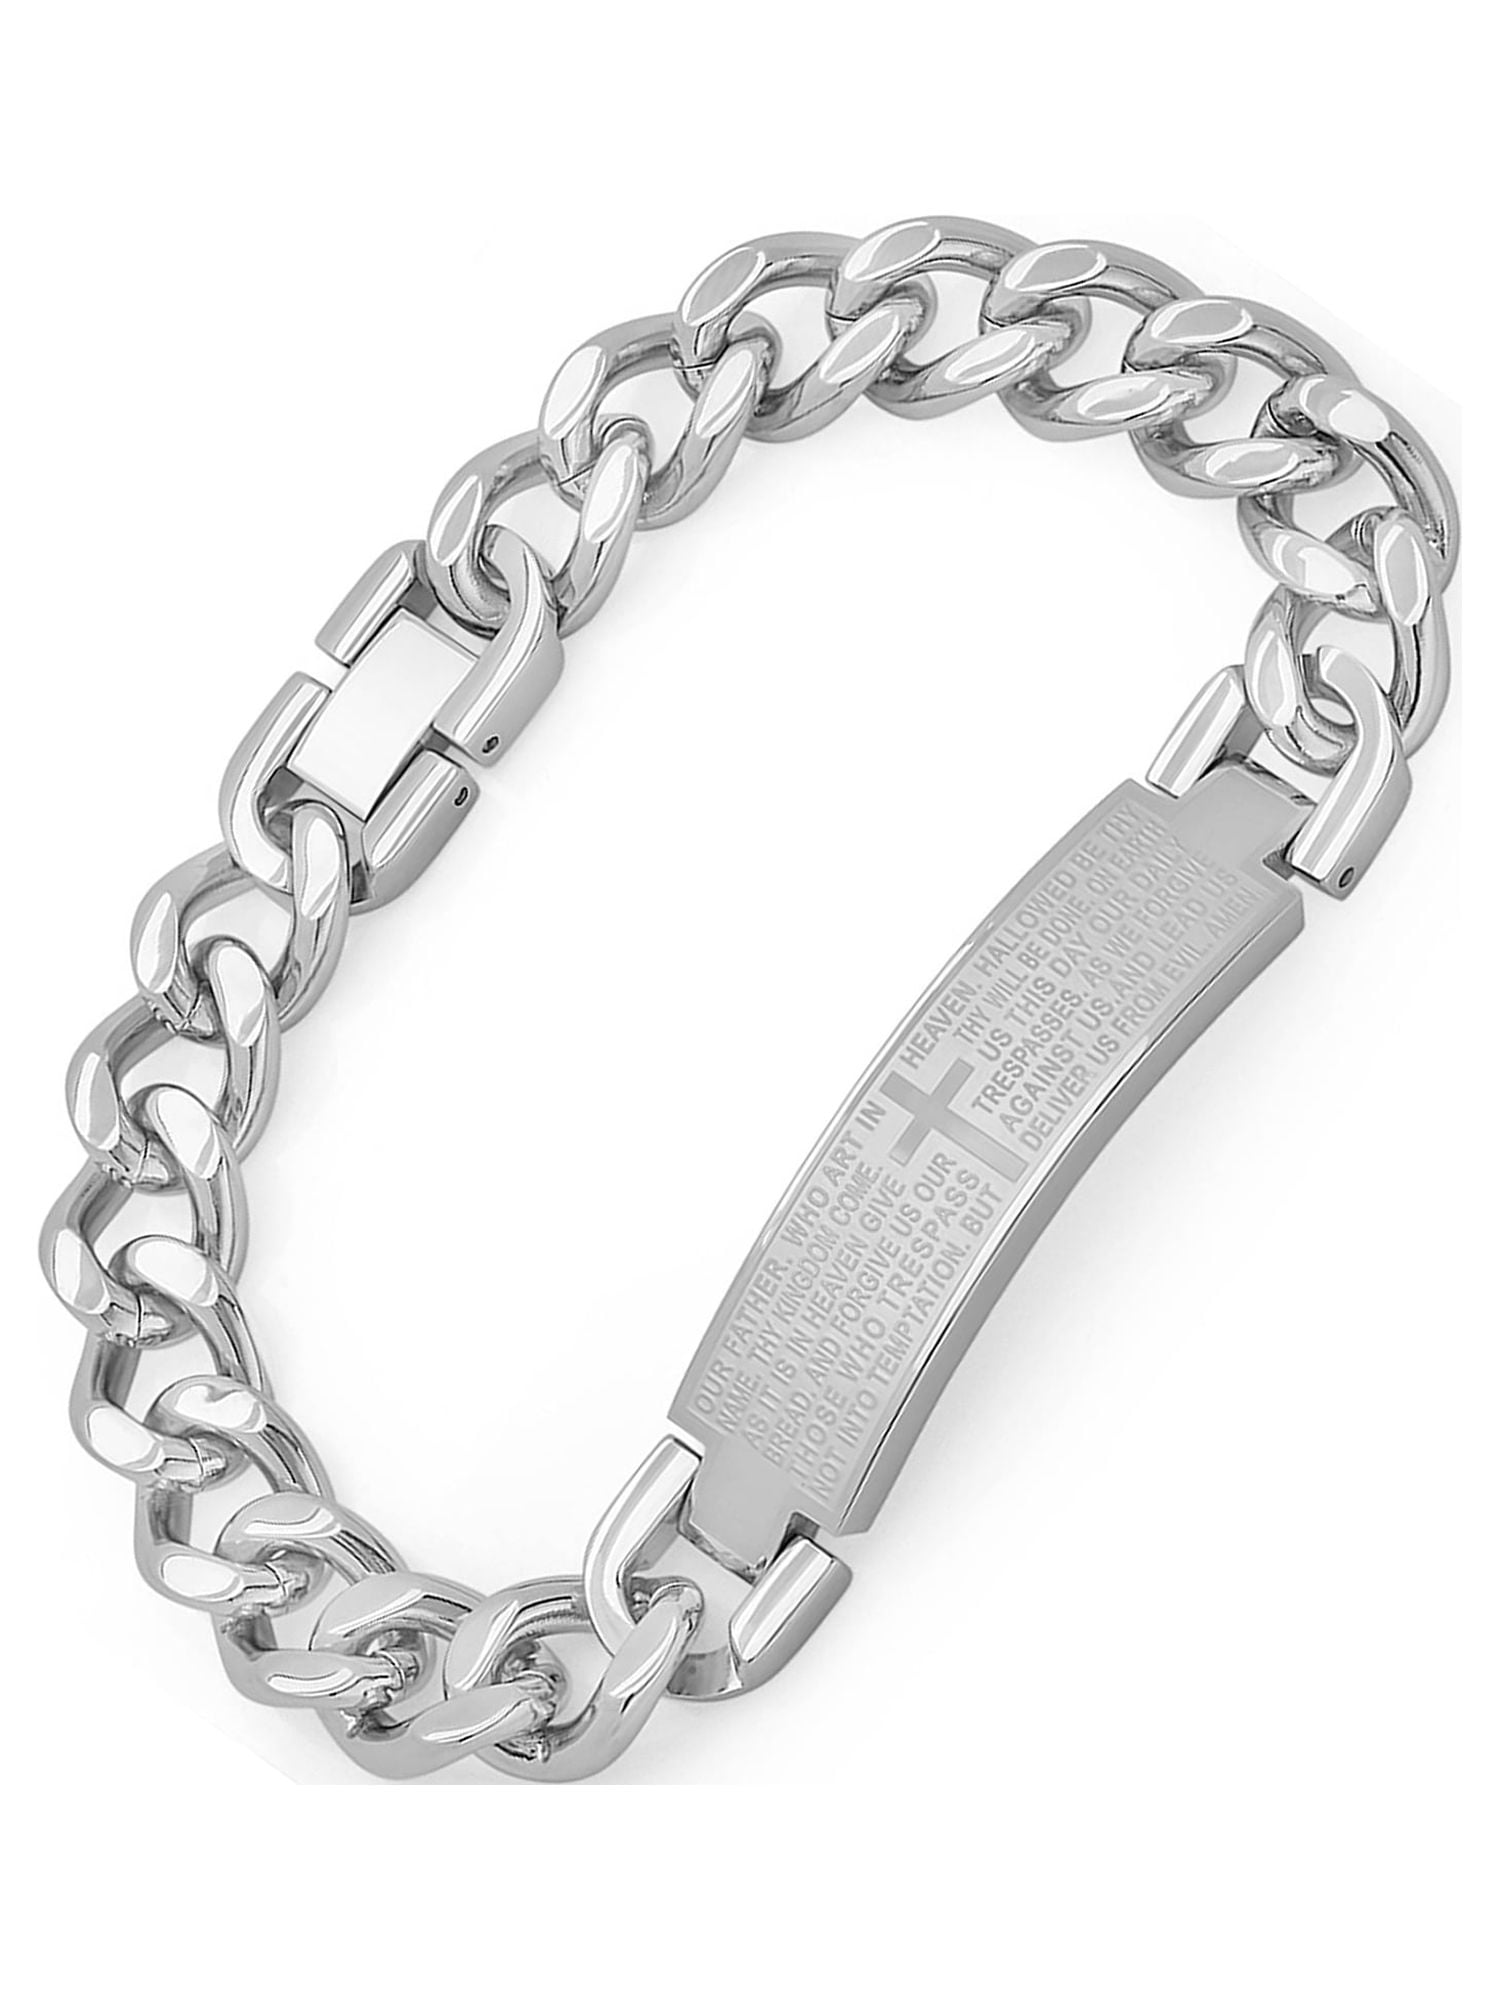 New In: Heavy Men's Sterling Silver Identity Bracelet From £139.00